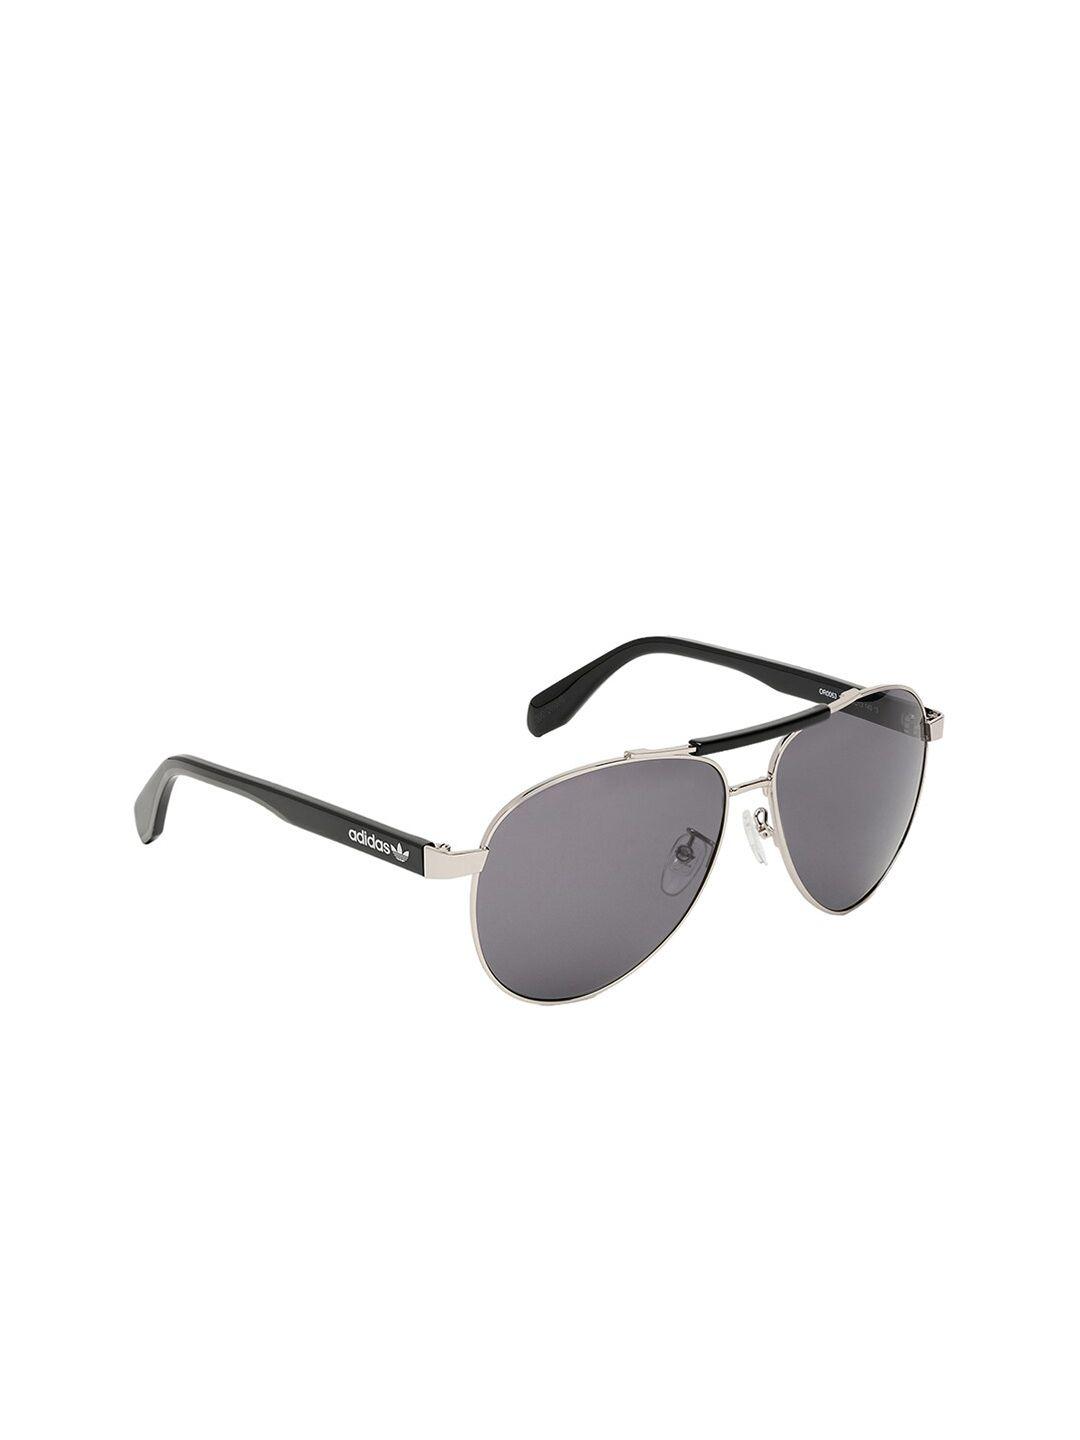 adidas-men-uv-protected-square-sunglasses